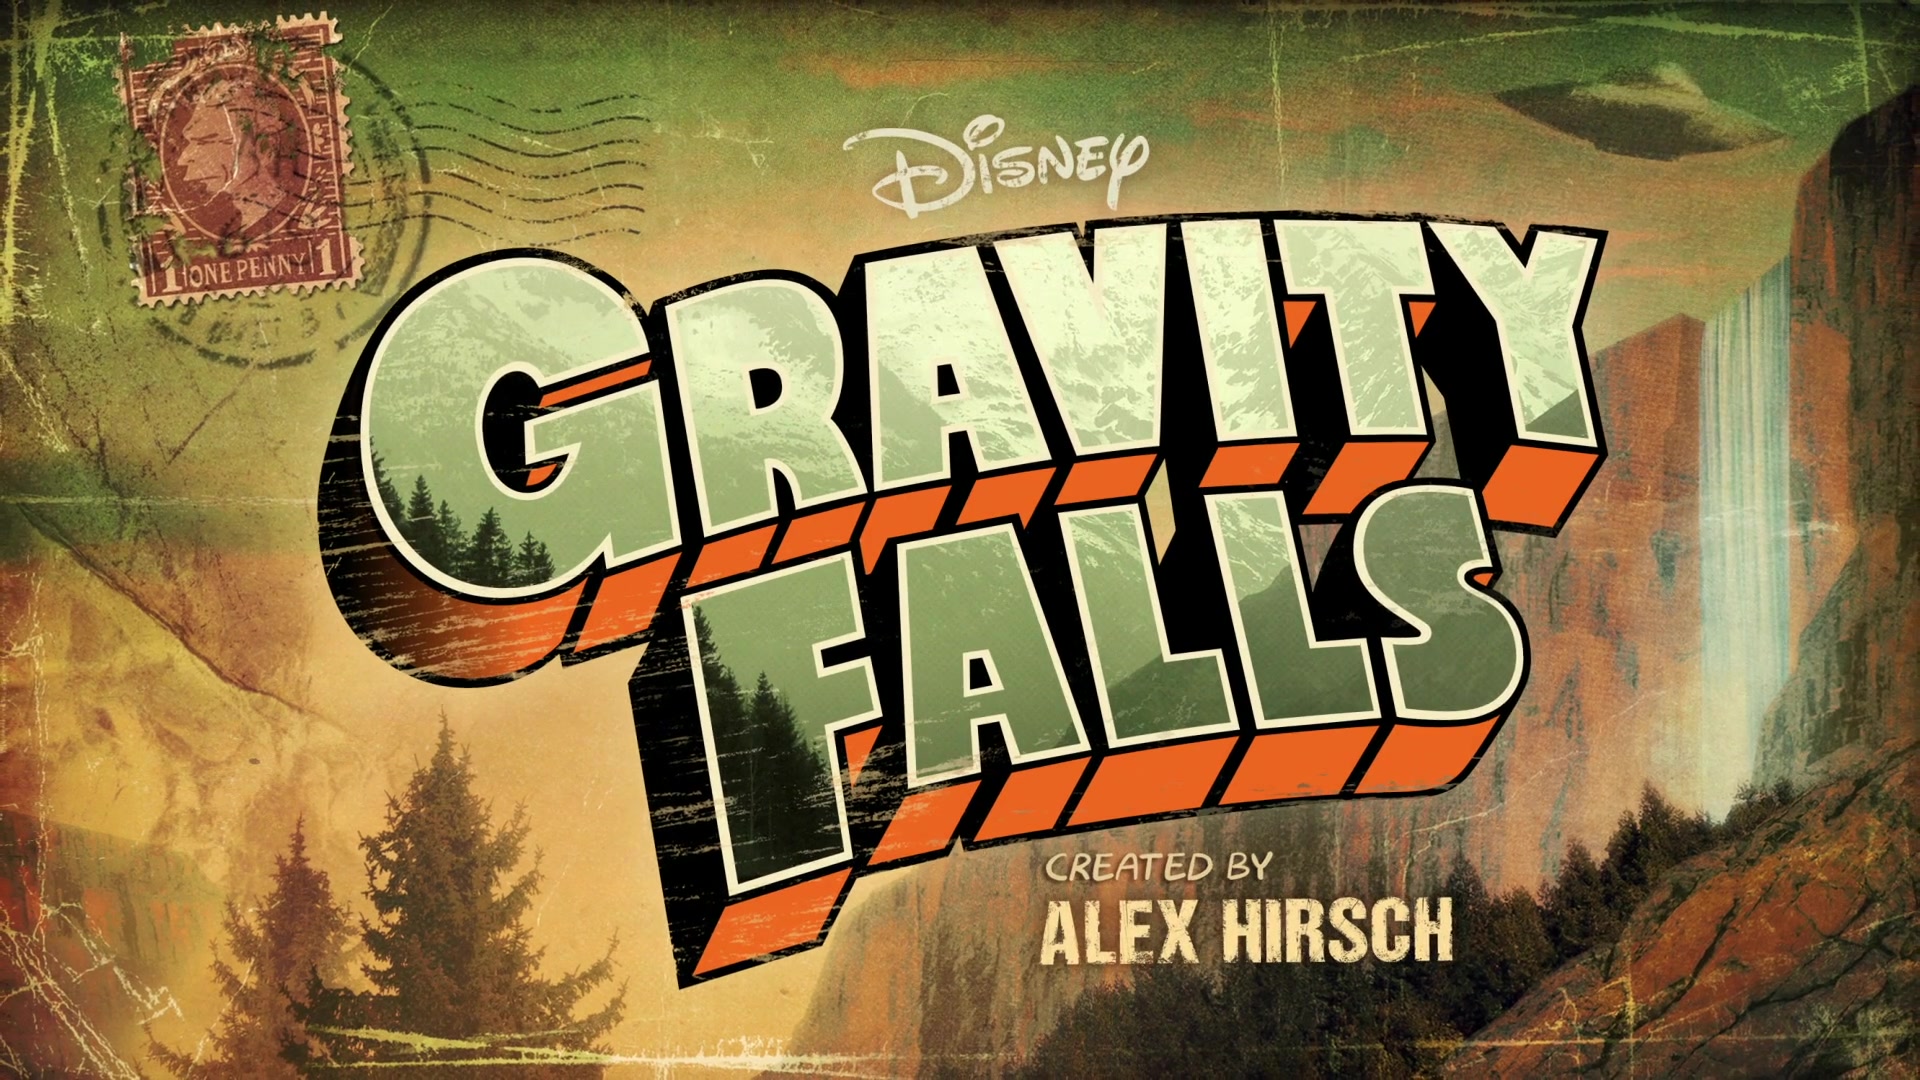 Gravity Falls: Um Verão de Mistérios, Dublapédia